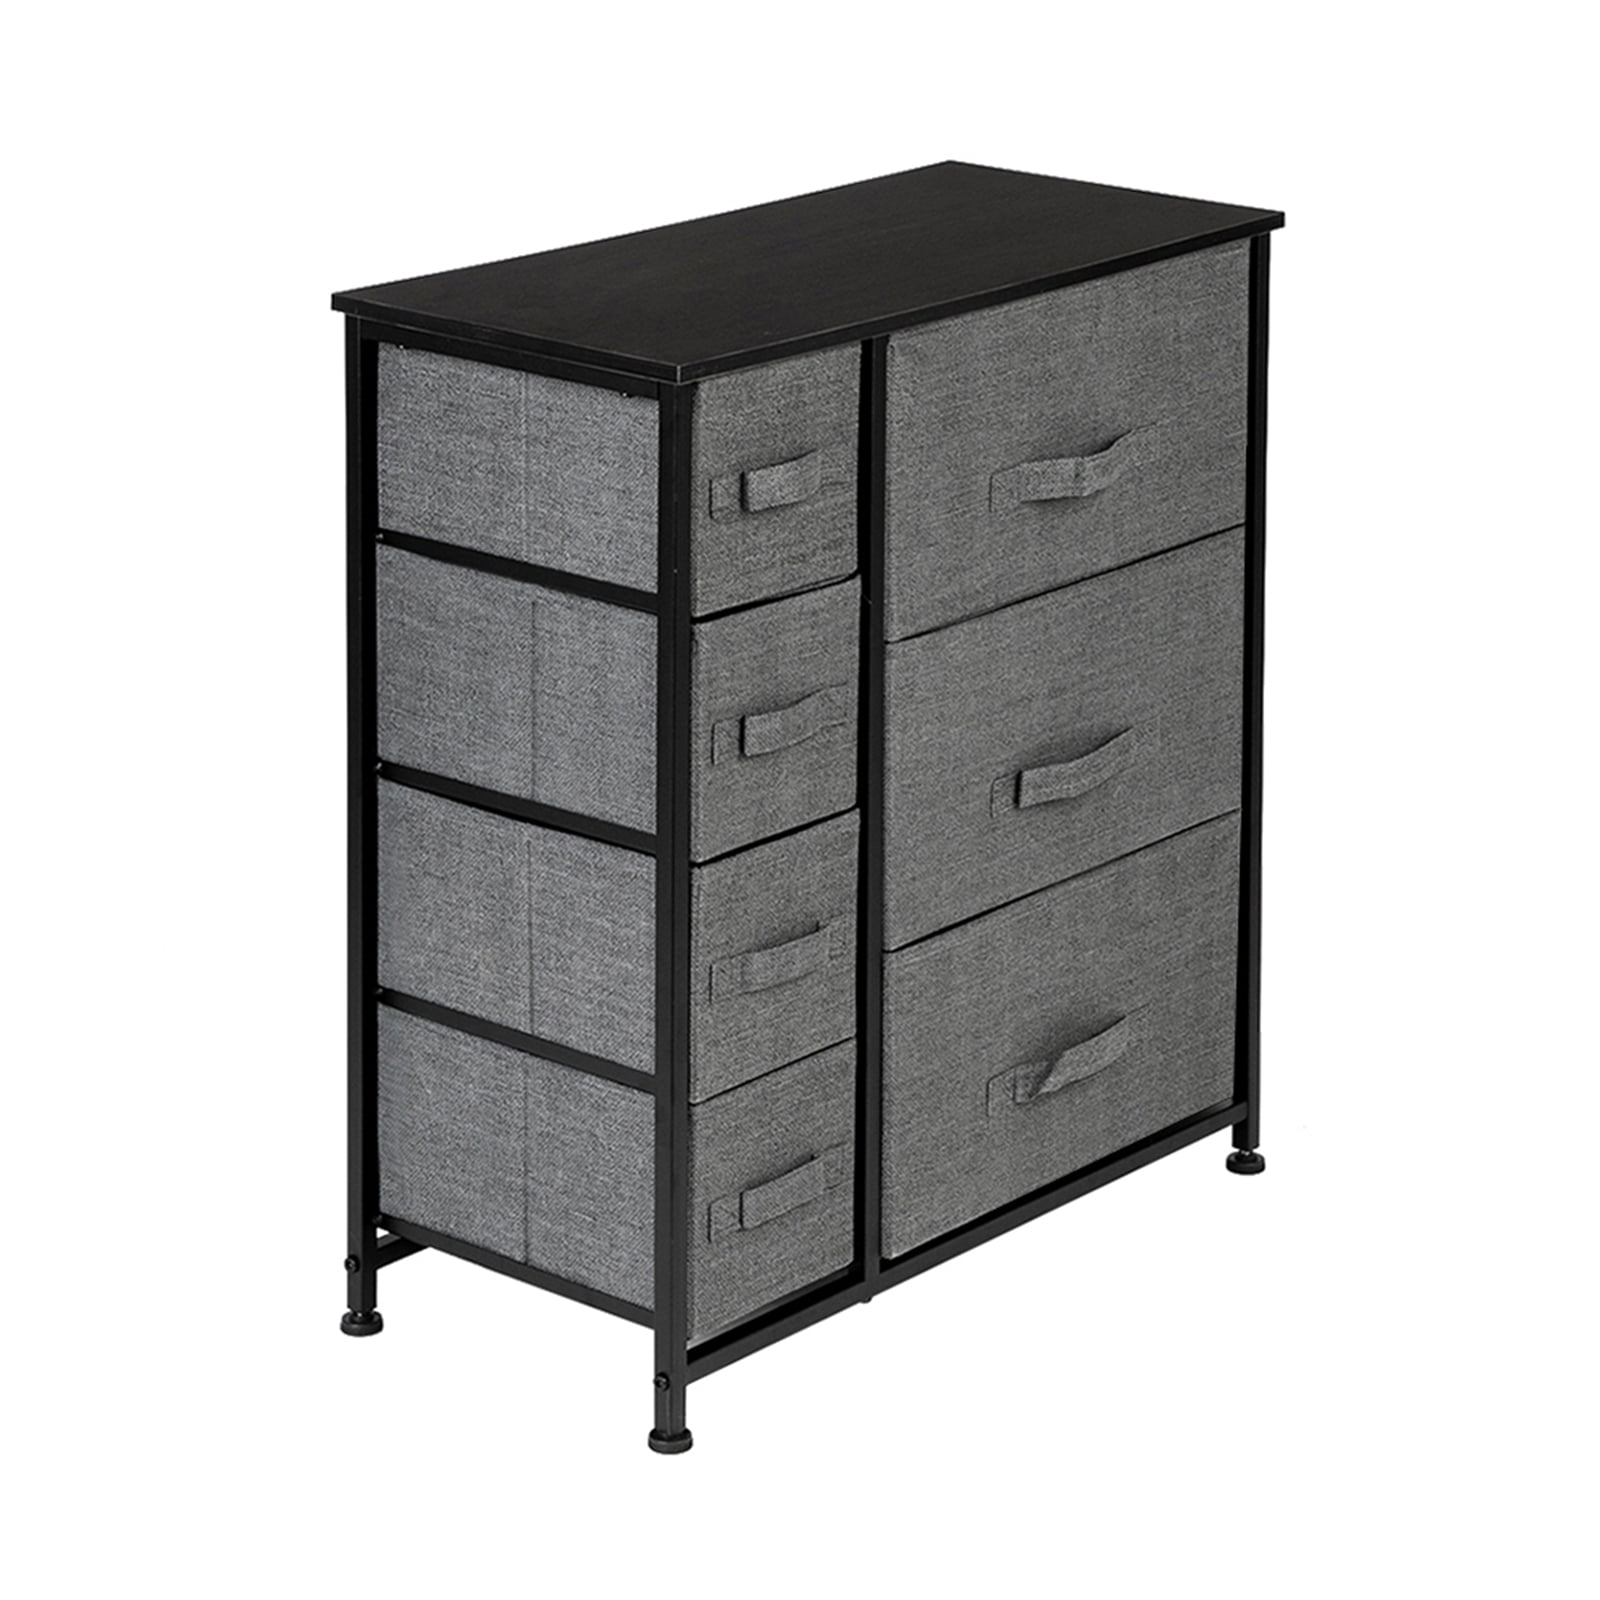 Wide Fabric Drawers Dresser Storage Shelf Organizer Bins Chest Furniture Cabinet 